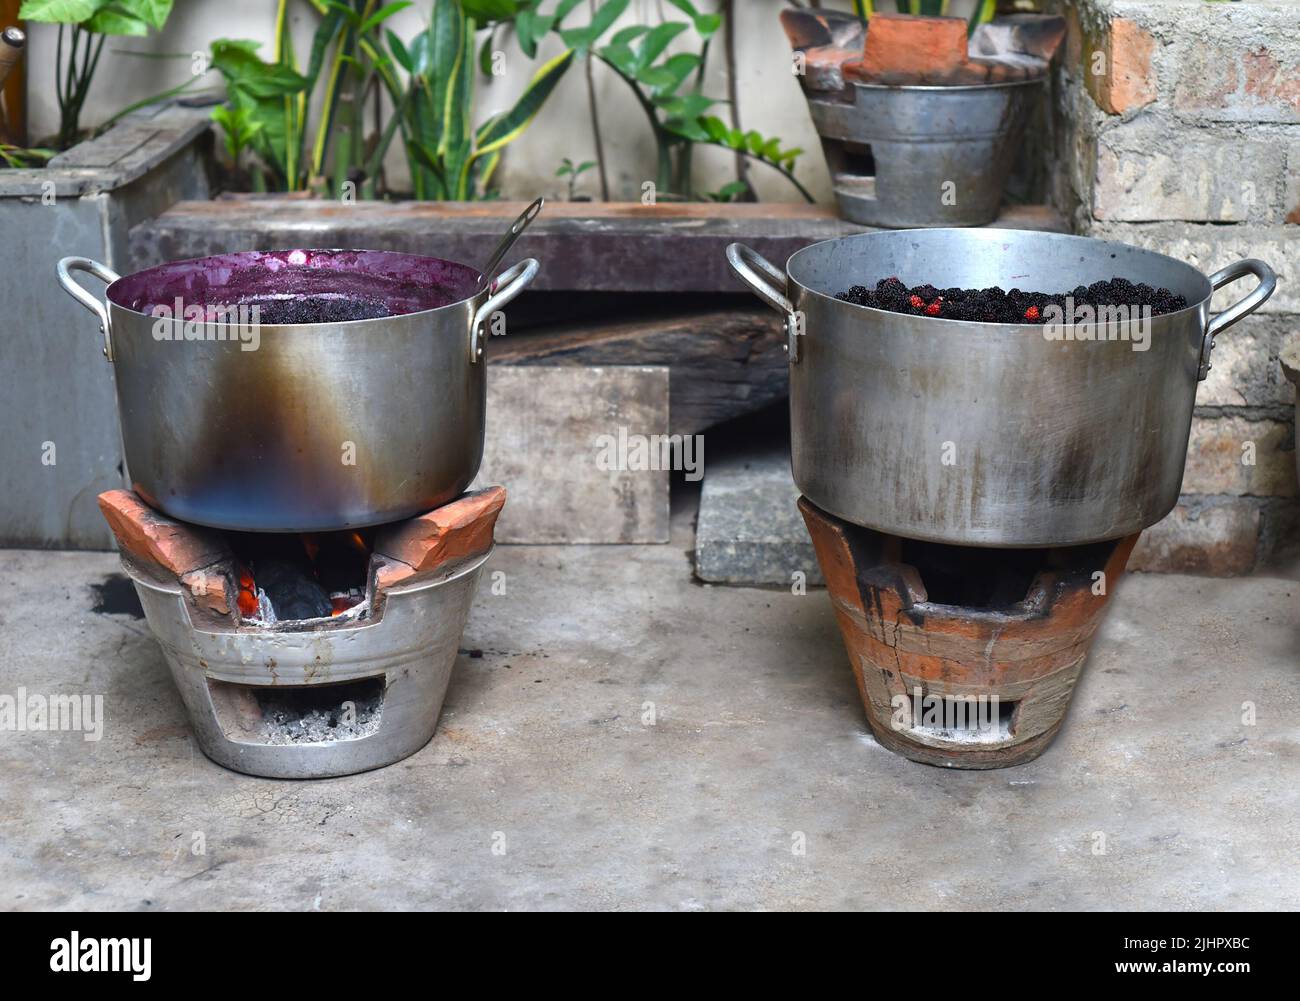 Faire bouillir la confiture de mûrier dans une casserole en métal sur feu ouvert Banque D'Images